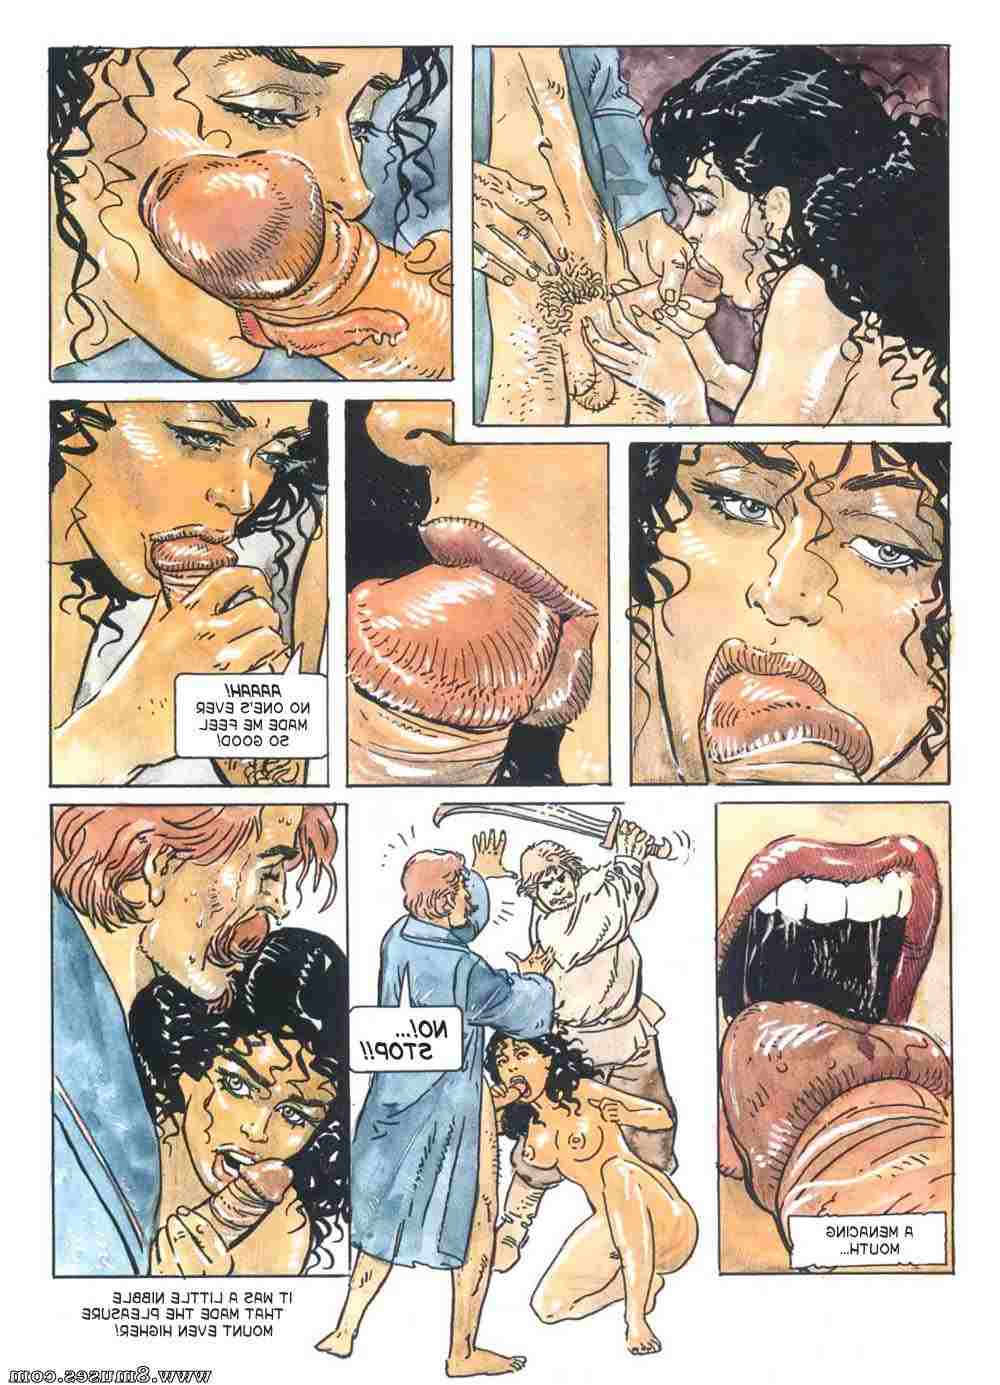 1980s porn comics